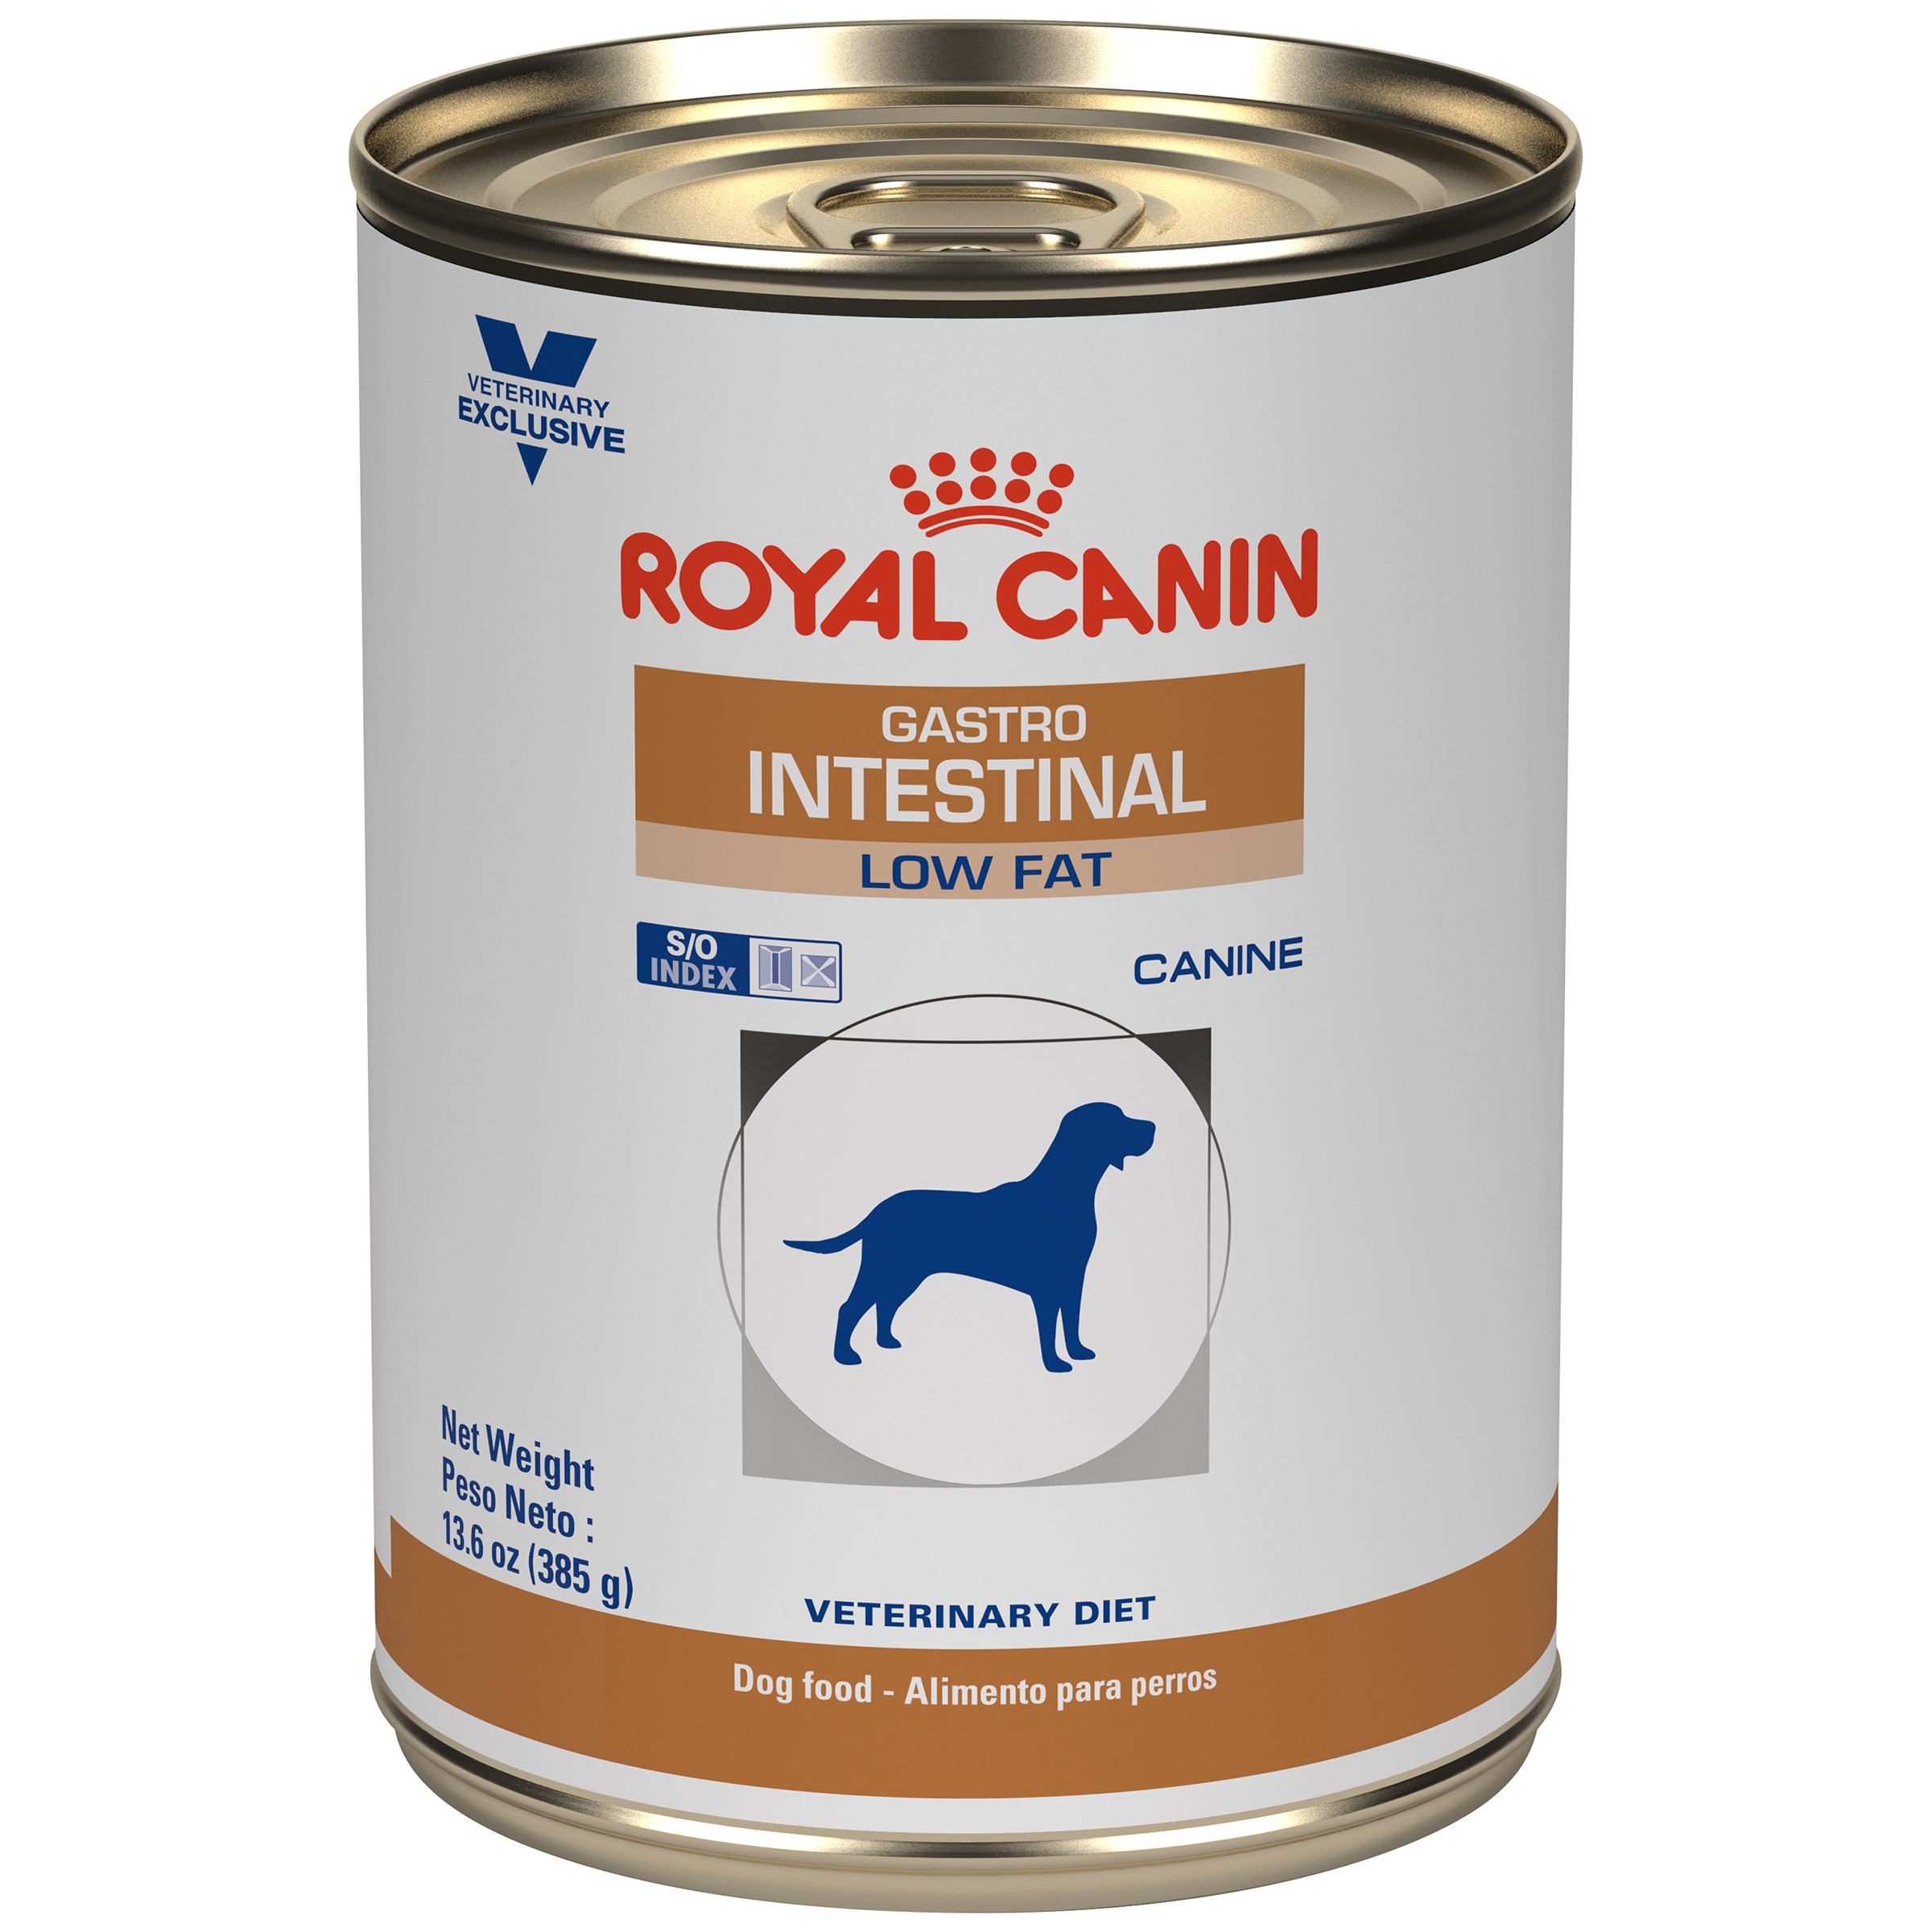 Гастро купить для собак влажный корм интестинал. Гастроинтстинал Лоу фэт Роял Канин. Royal Canin гастро Интестинал для собак. Роял Канин гастро консервы для собак. Royal Canin Gastro intestinal для собак консервы.